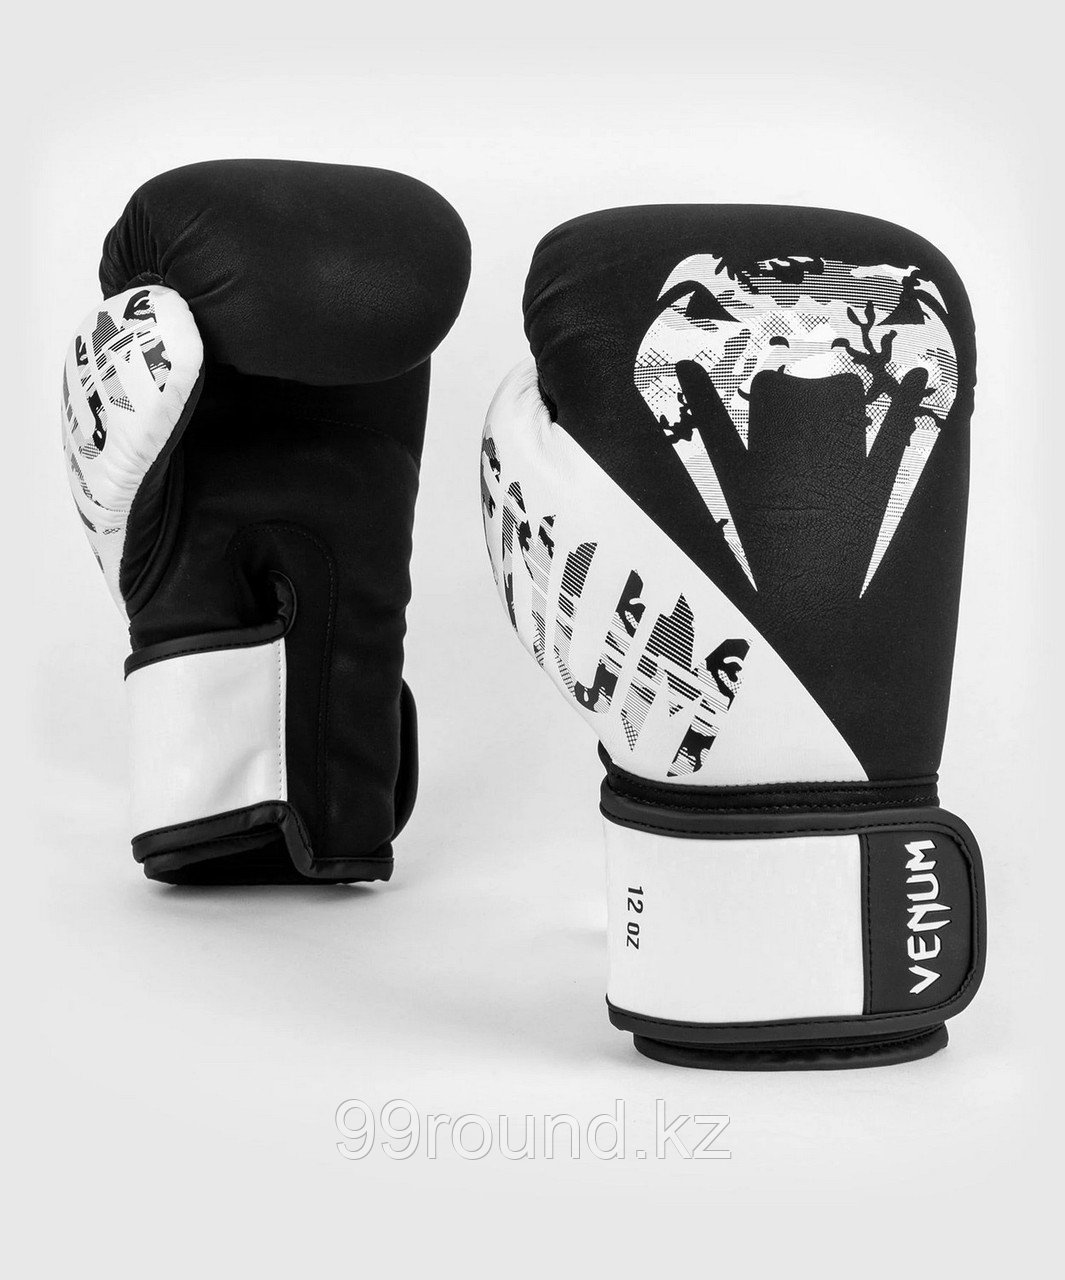 Перчатки для бокса Venum Legacy Boxing Gloves черный/белый, фото 1